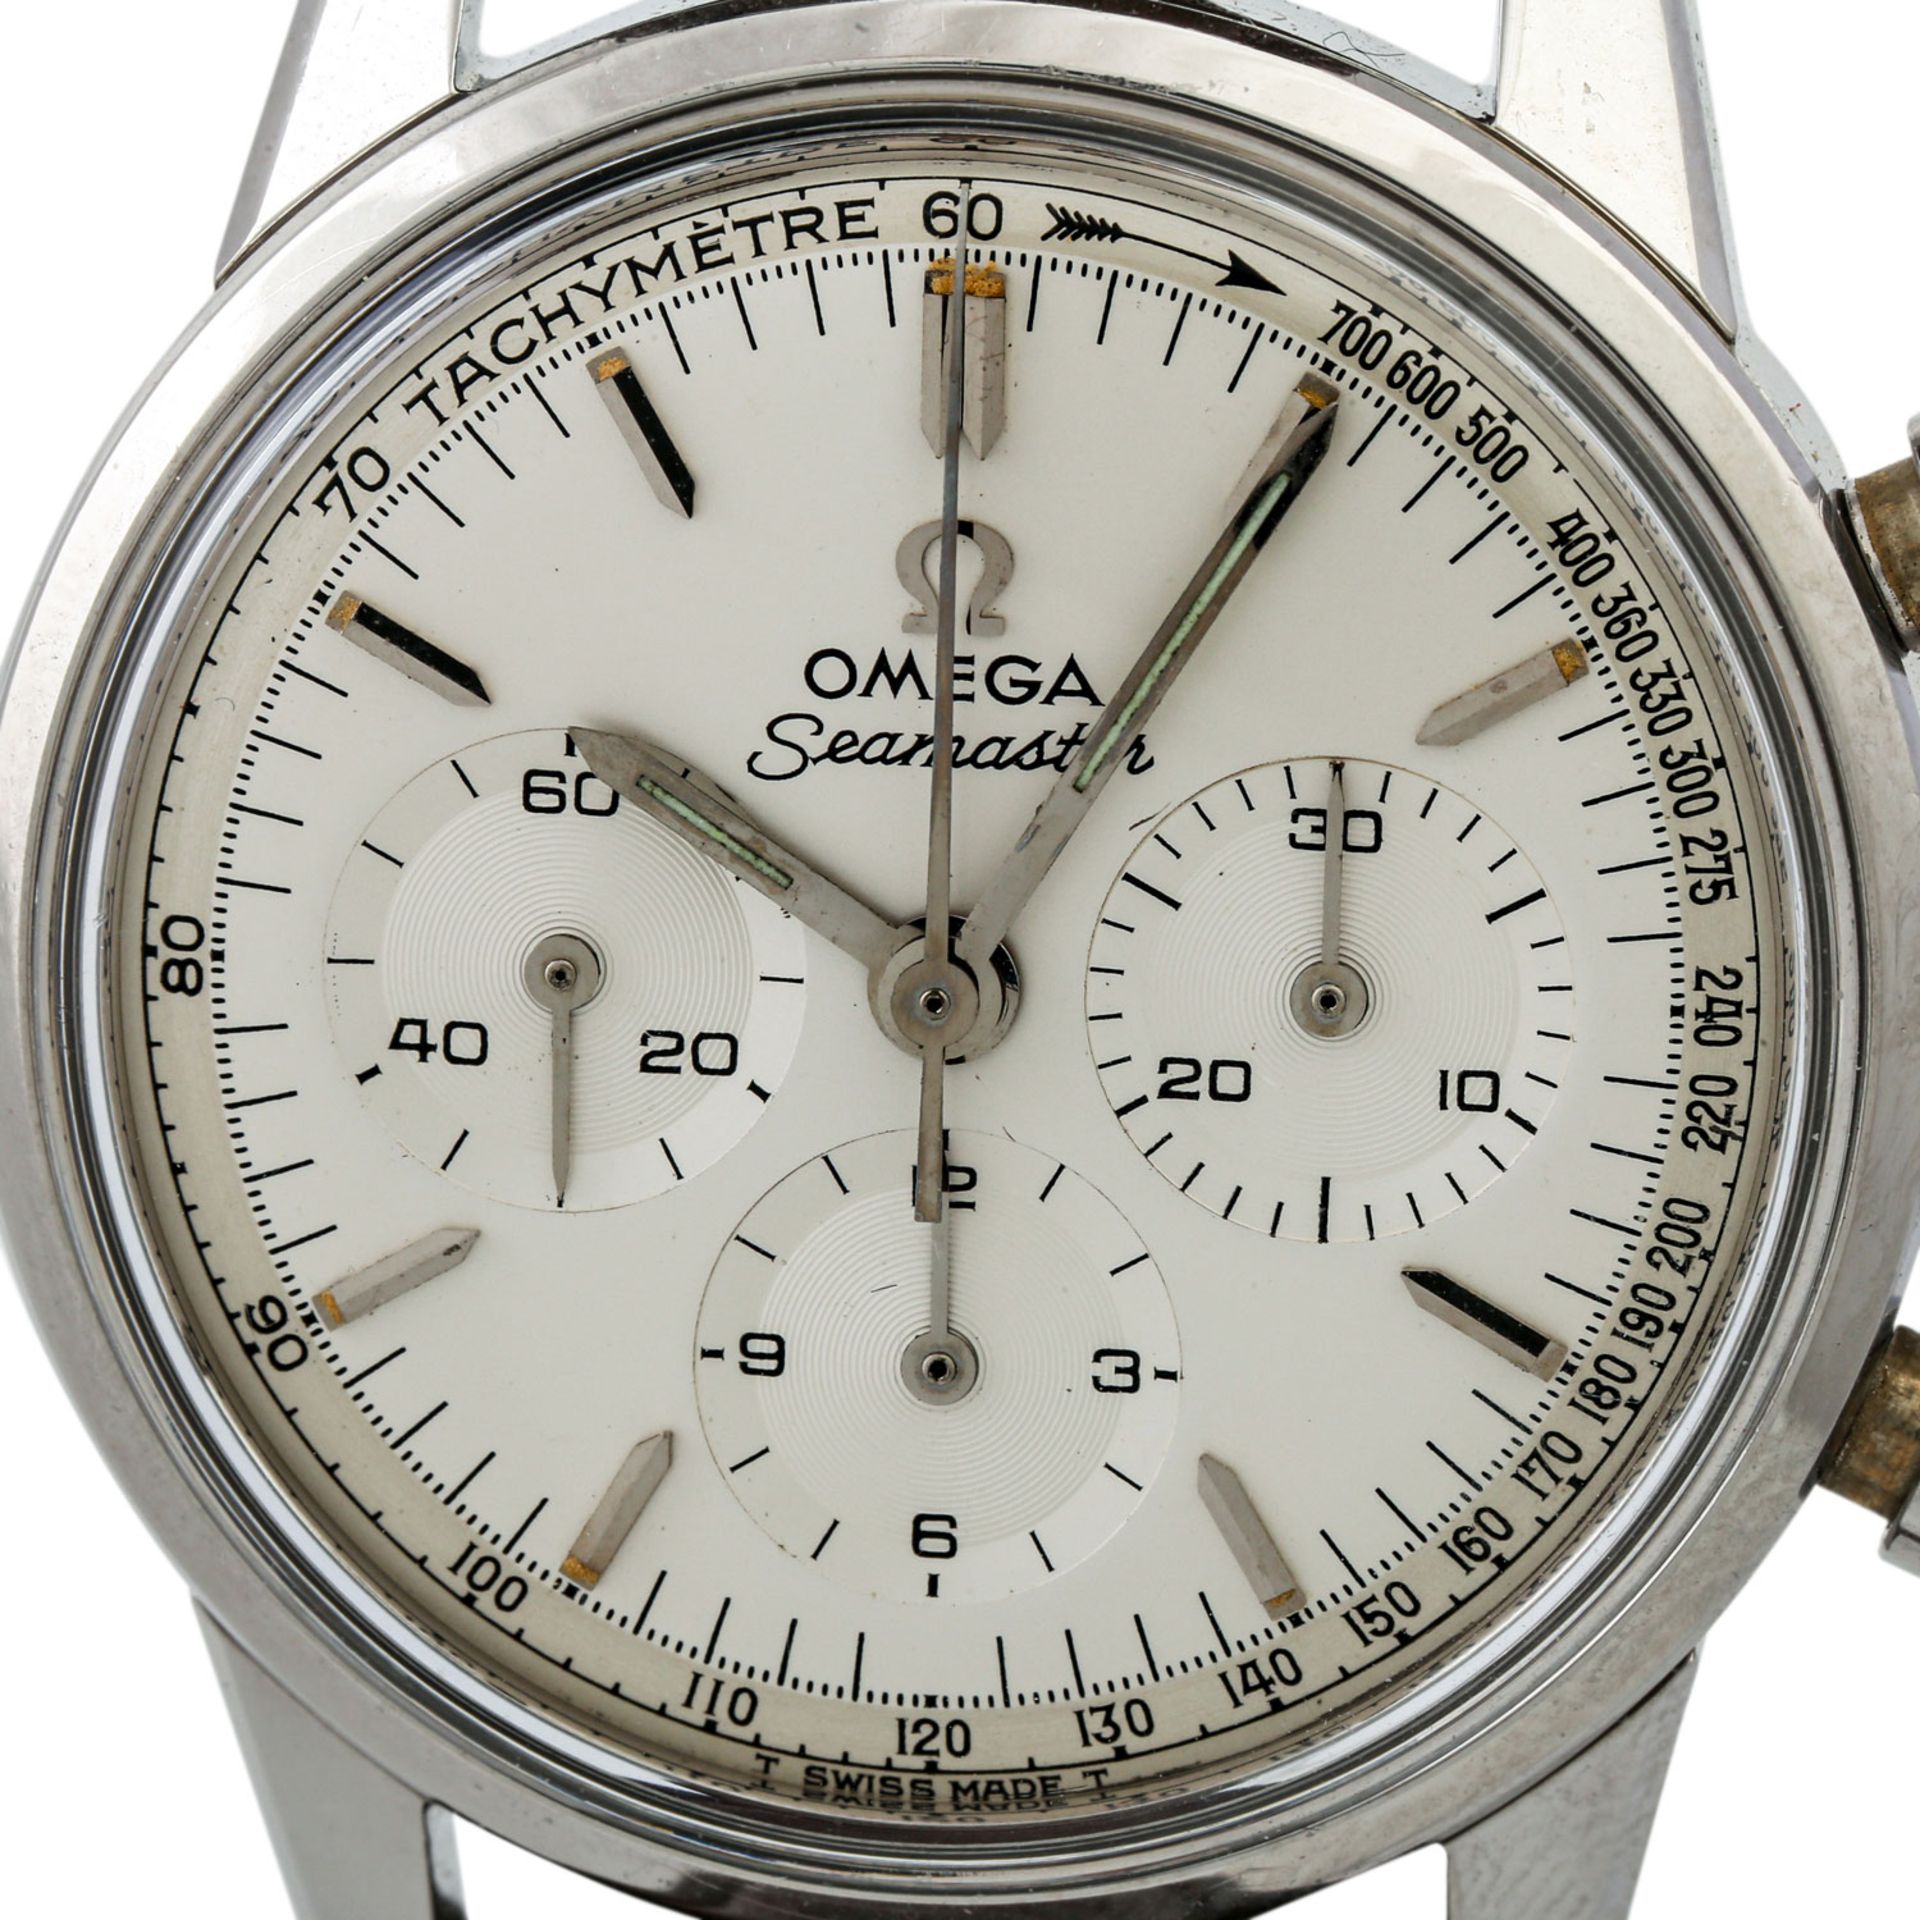 PFANDAUKTION - Omega Seamaster Vintage Chronograph, Stahl, Omega Seamaster Vintage Chr - Image 2 of 8